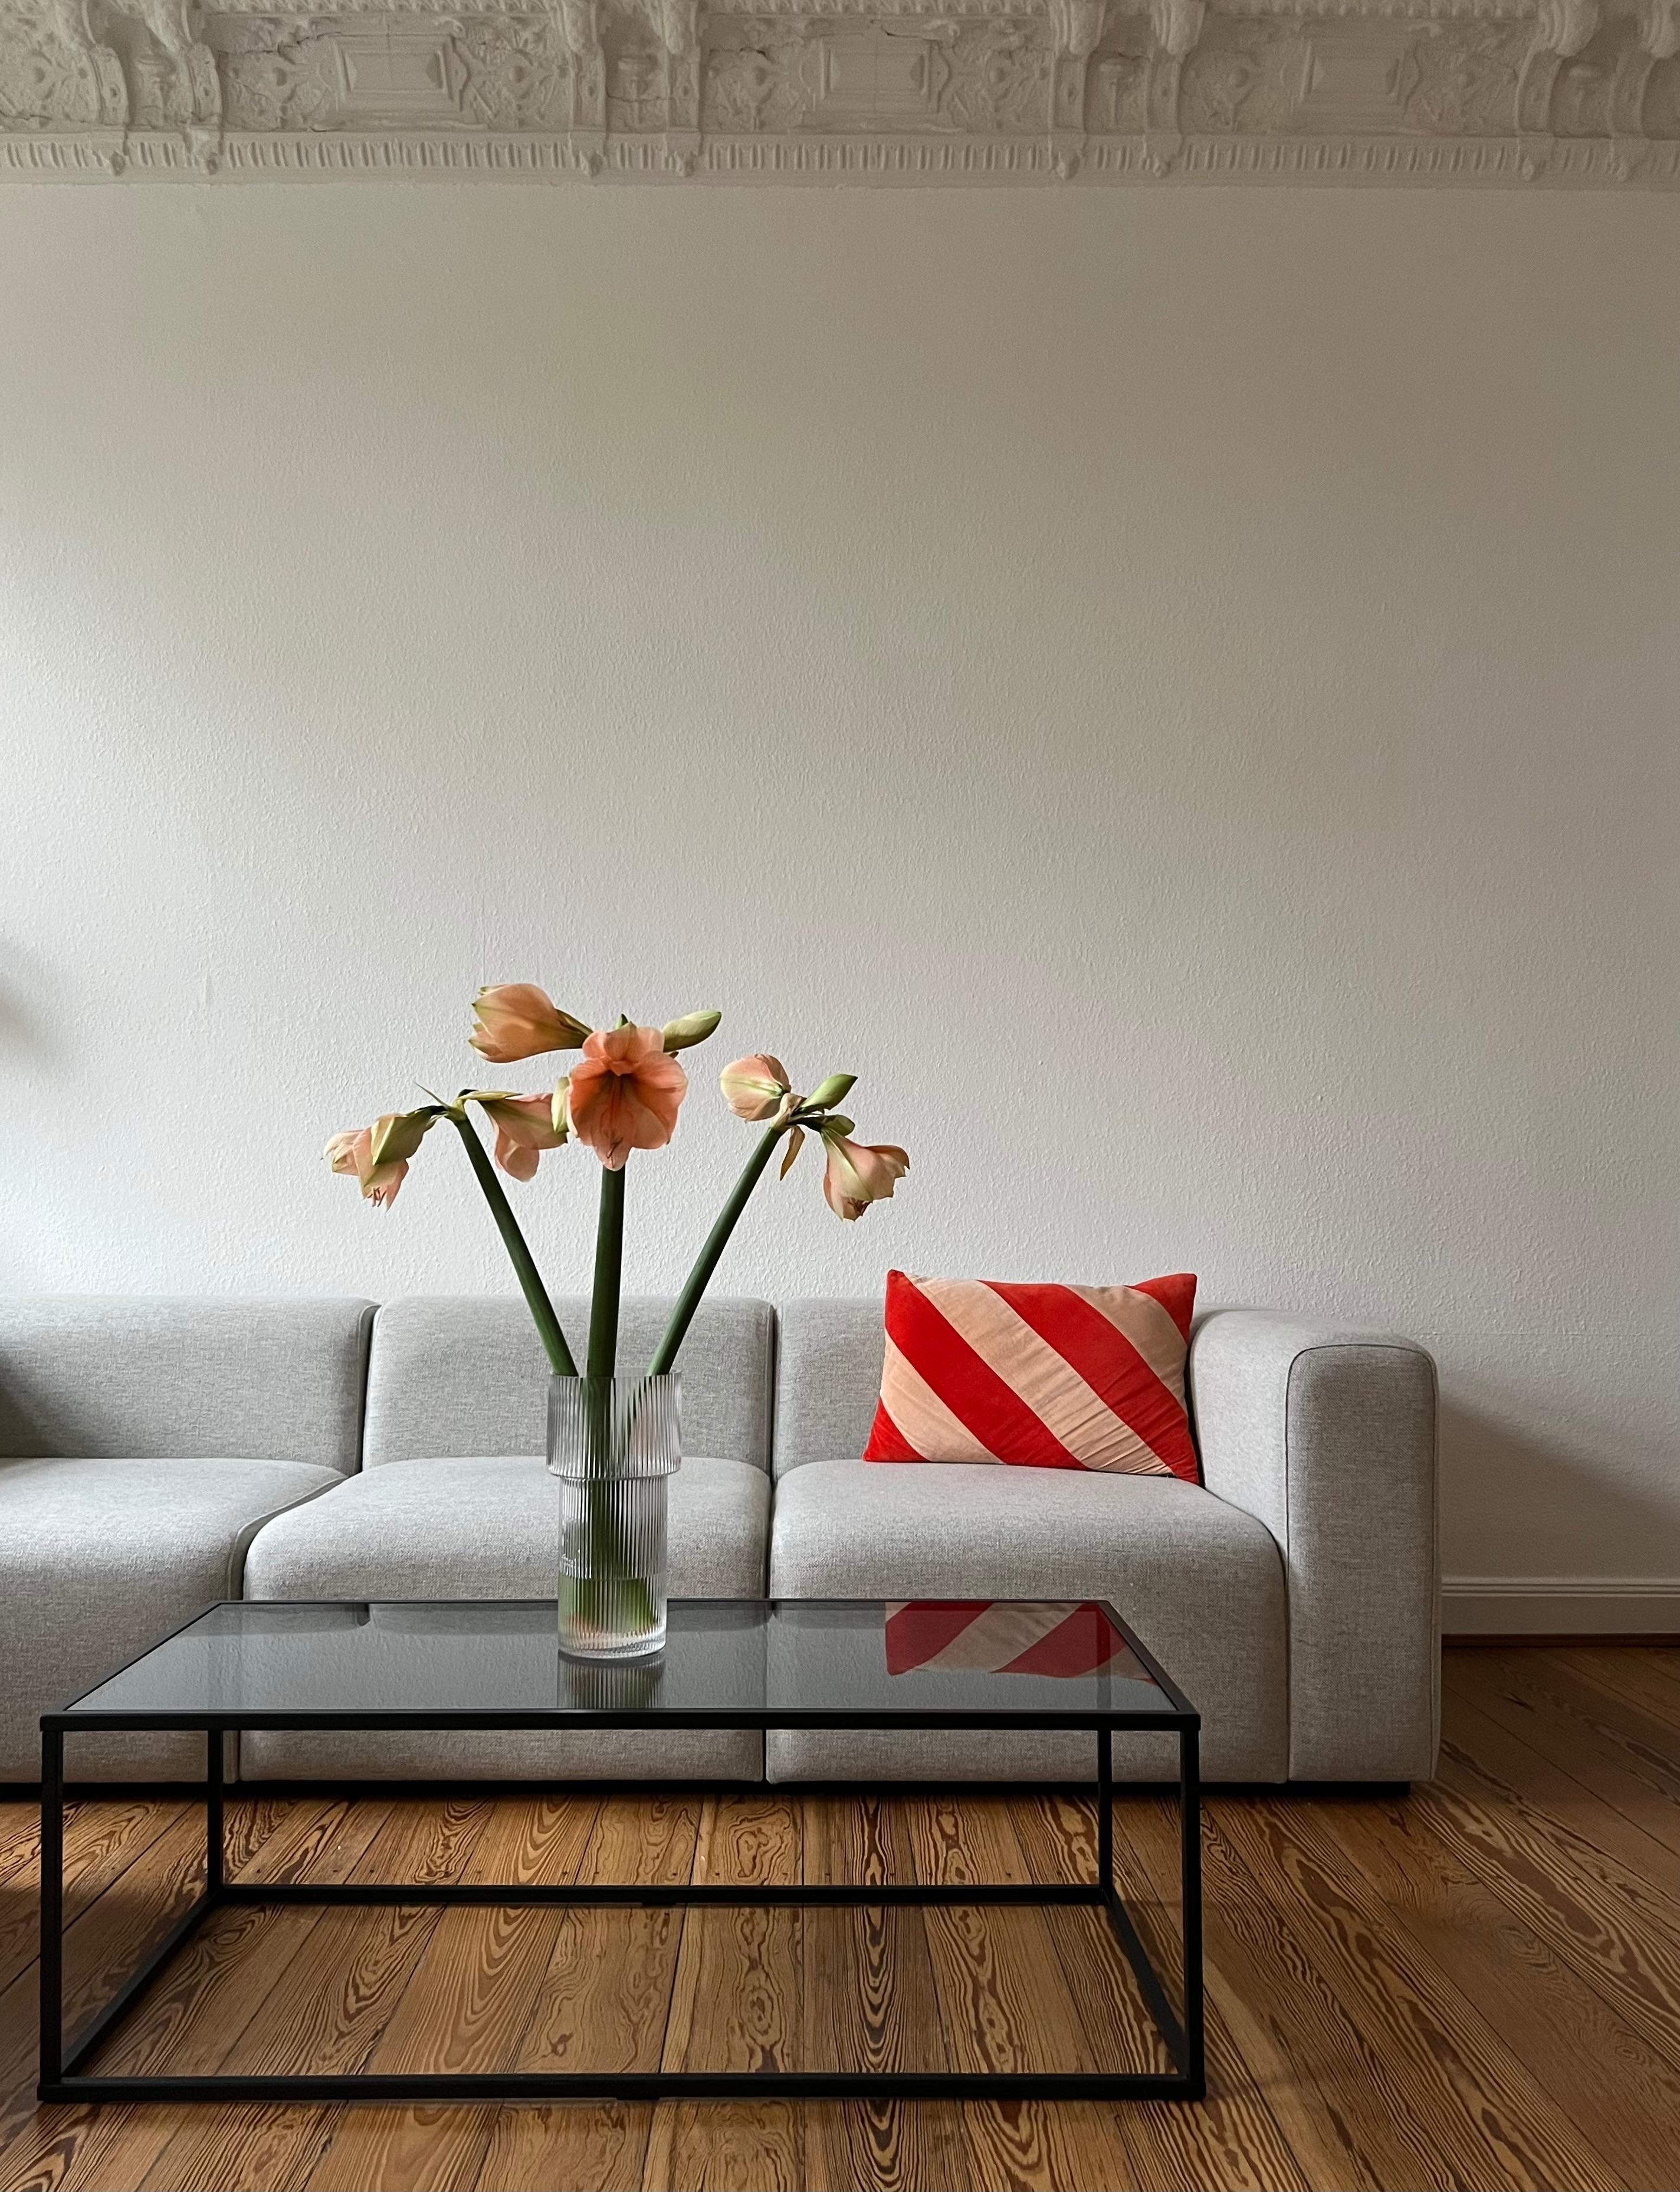 #amaryllis #sofa #couch #altbau #wohnzimmer #freshflowers #winterflowers #interior #blumen